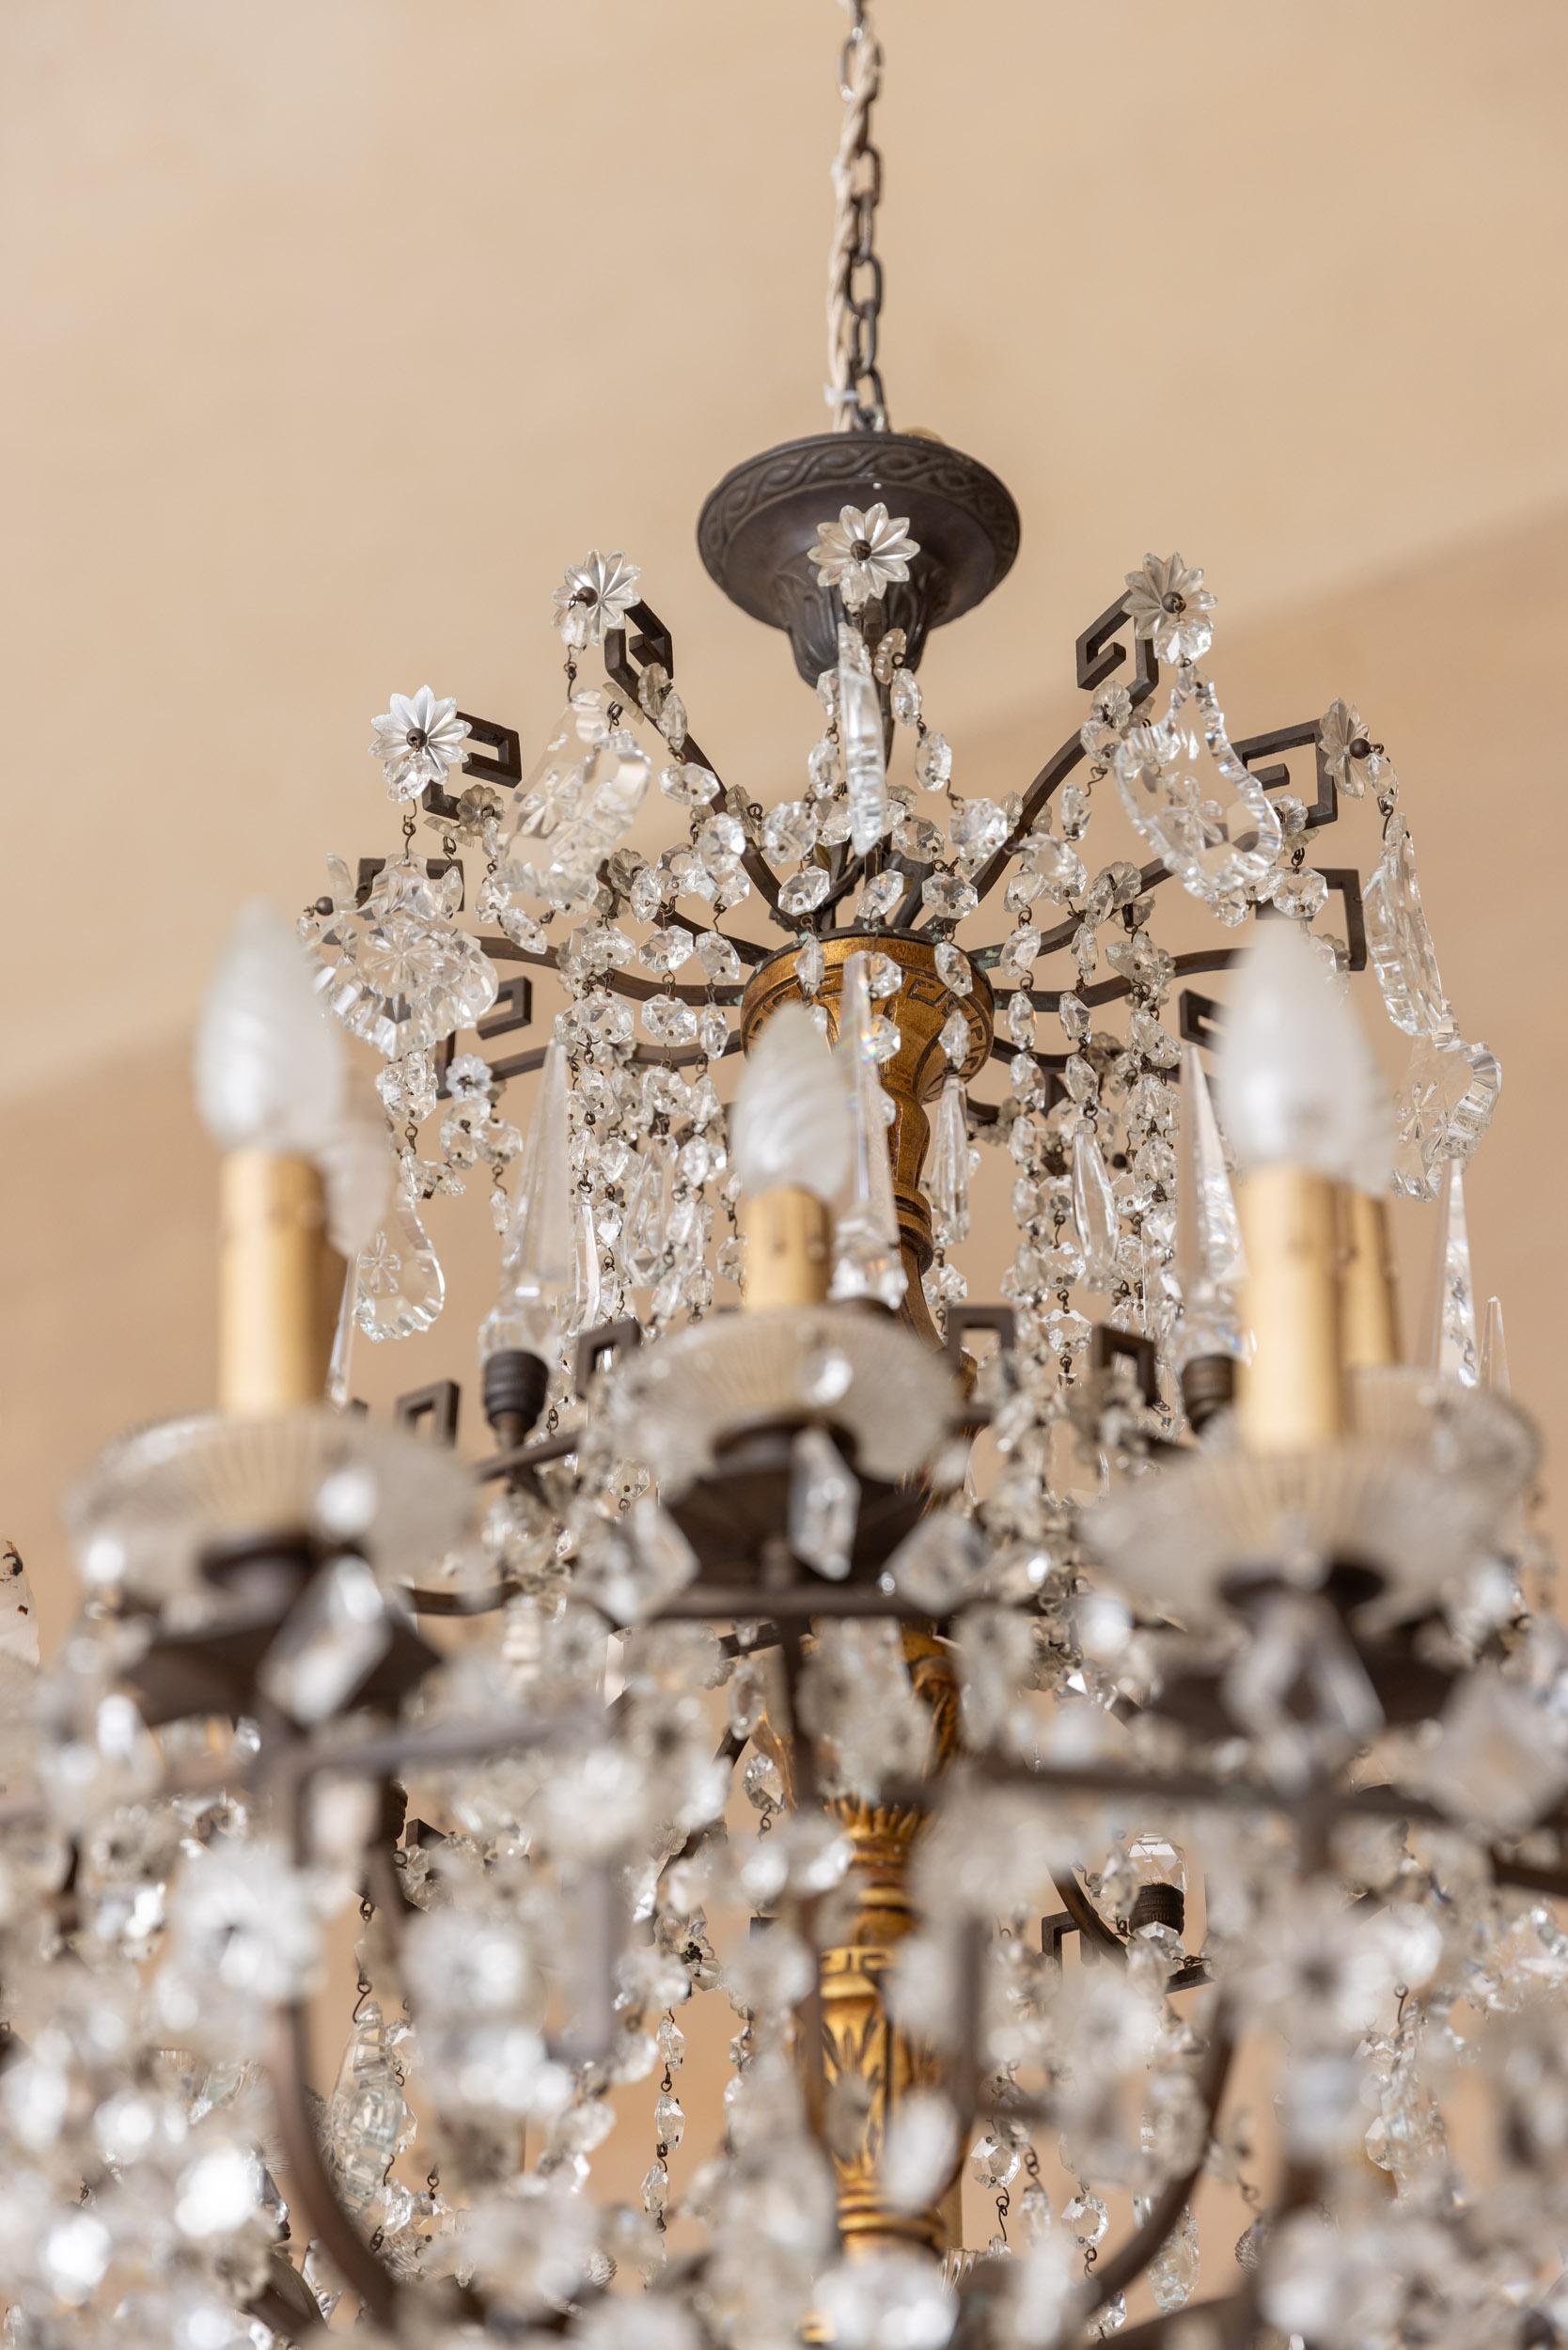 Italian Midcentury italian glass drops chandelier For Sale